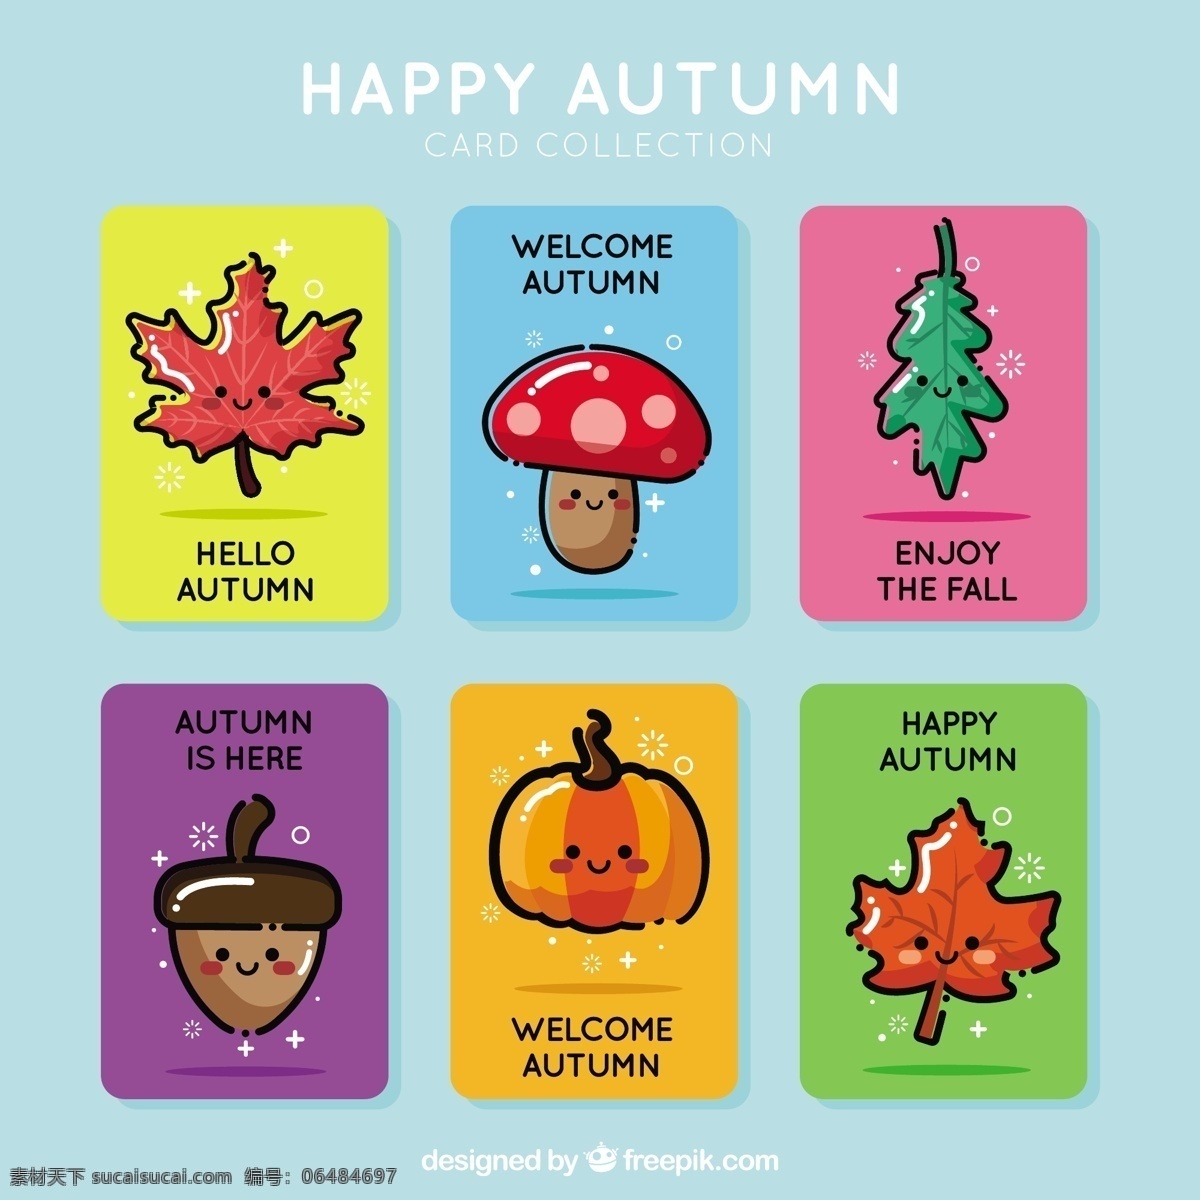 可爱 的卡 通 卡通 秋 牌 包 卡片 模板 树叶 自然 秋天 微笑 五颜六色 树木 南瓜 贺卡 蘑菇 凉爽 树枝